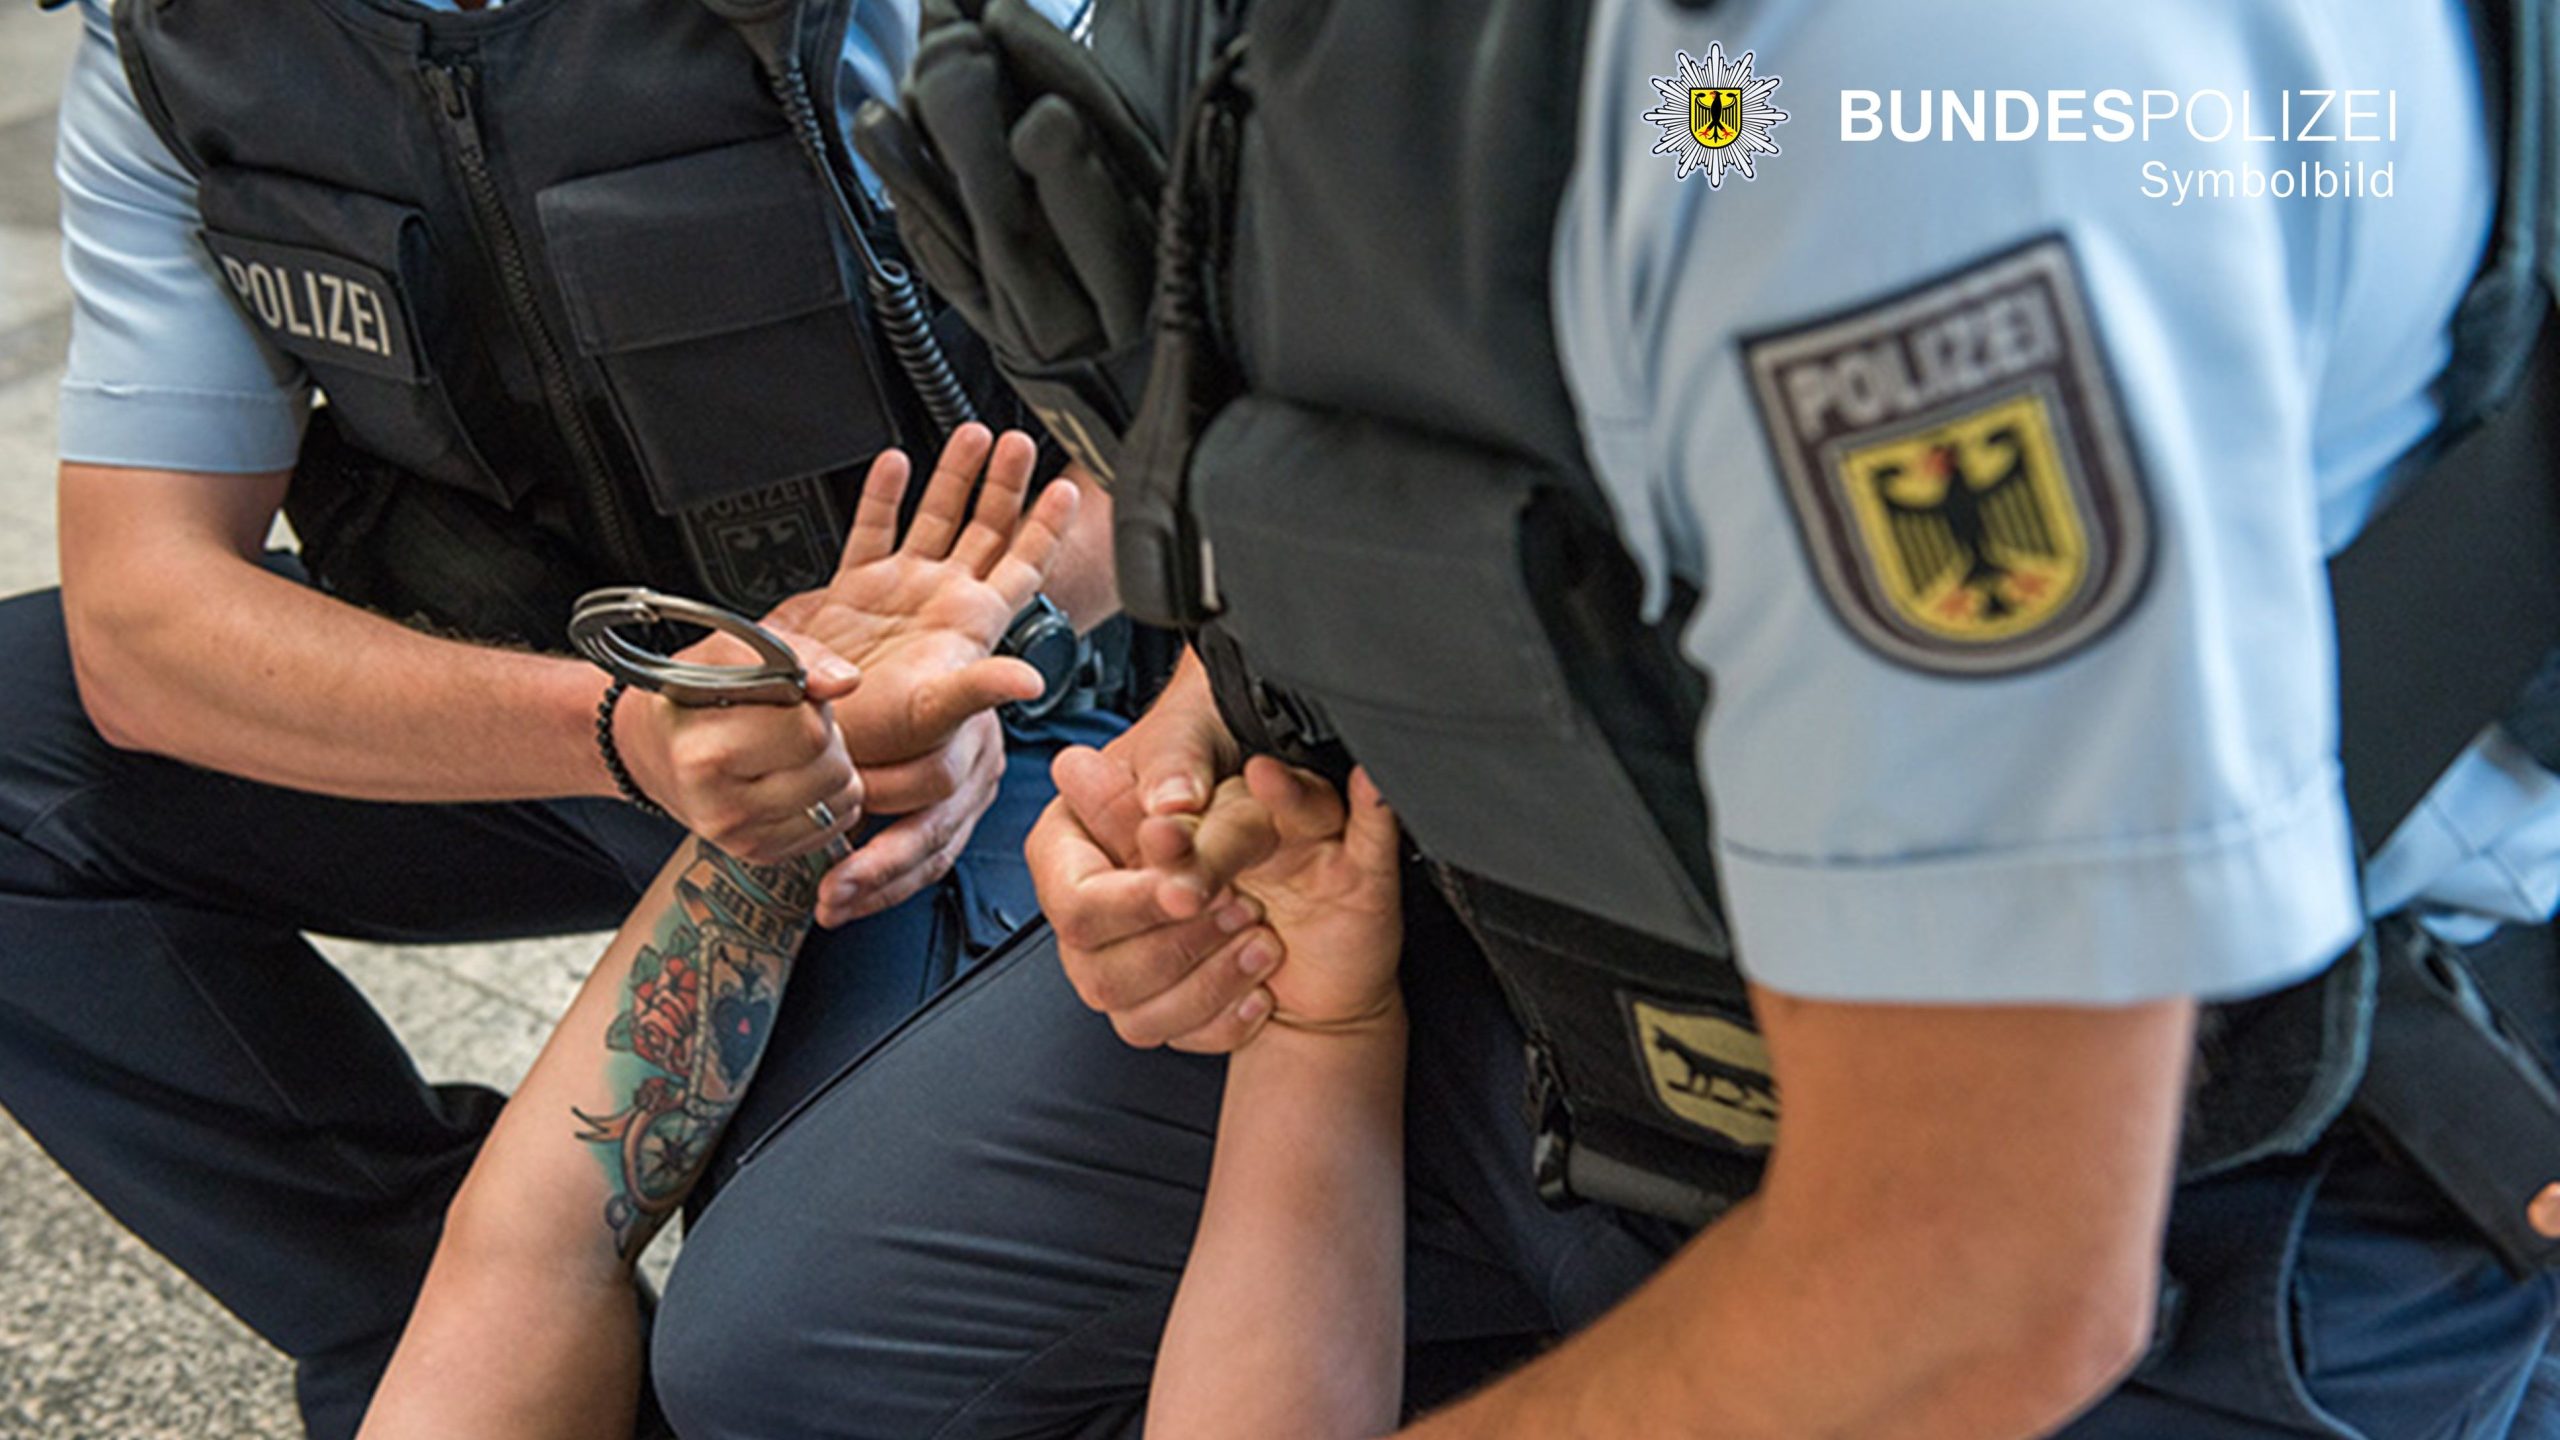 Bundespolizisten legen am Boden liegenden Mann Handschellen an. Symbolfoto Bundespolizei